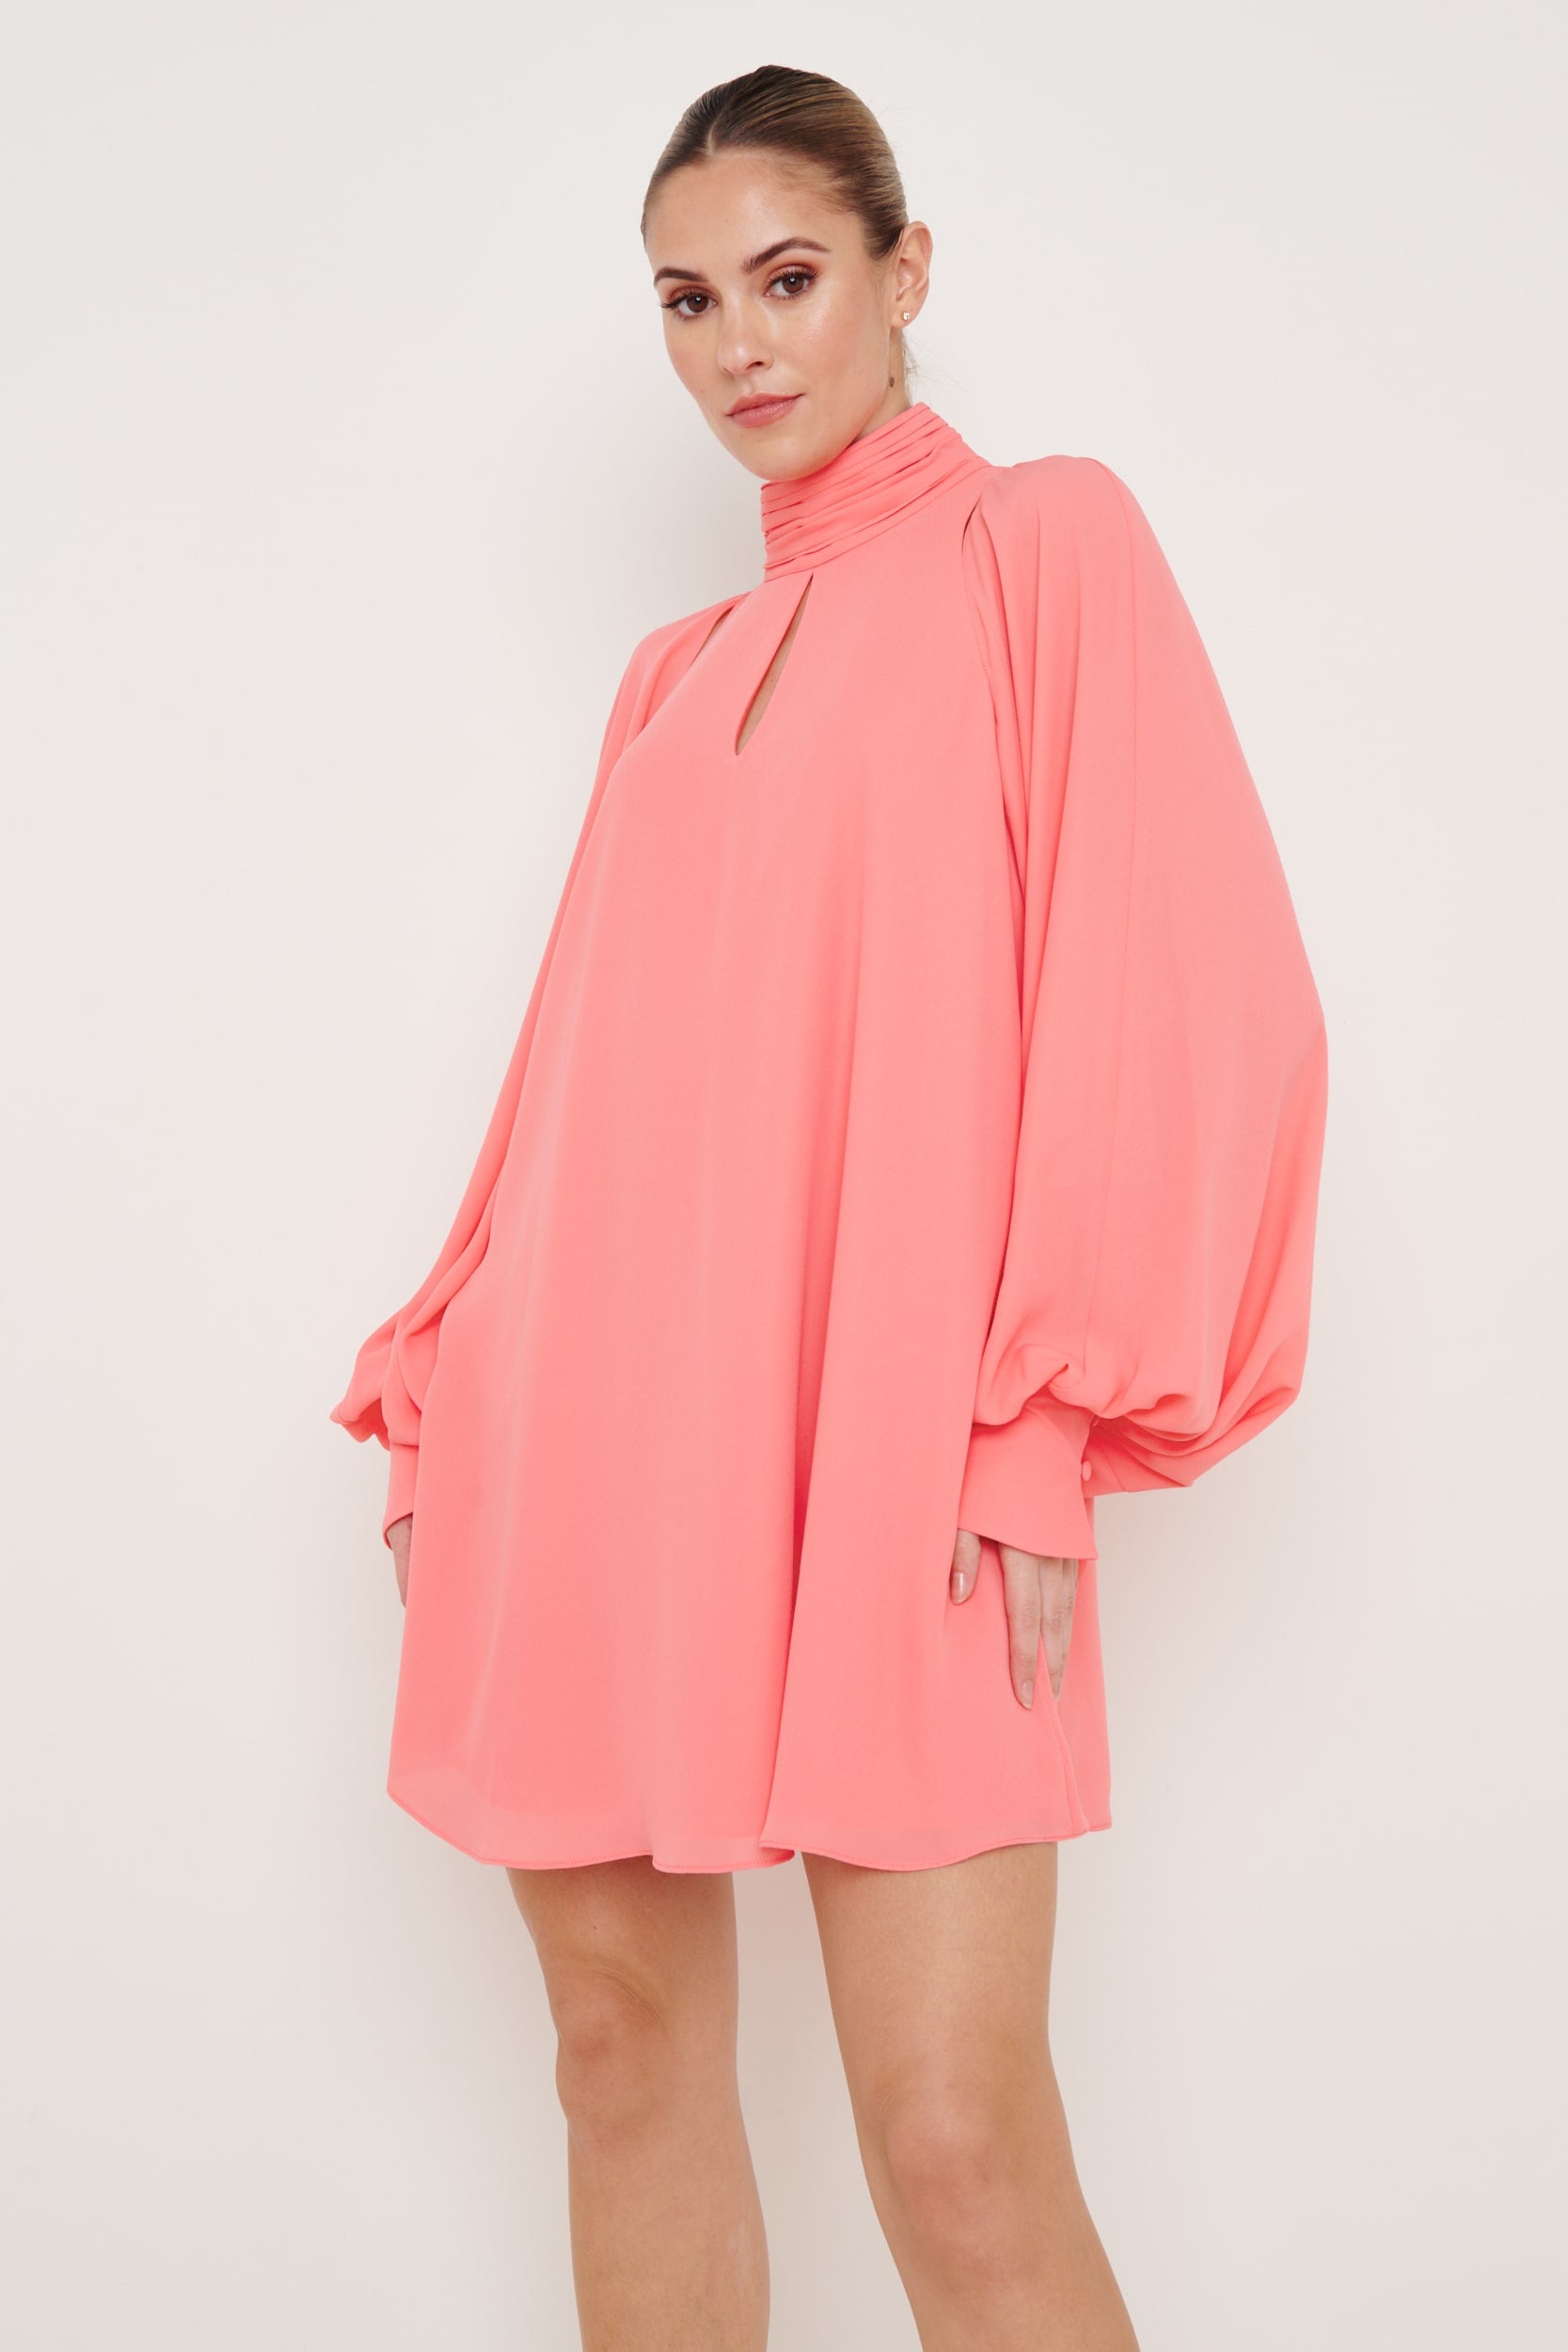 Romy Chiffon Mini Dress - Coral, 6